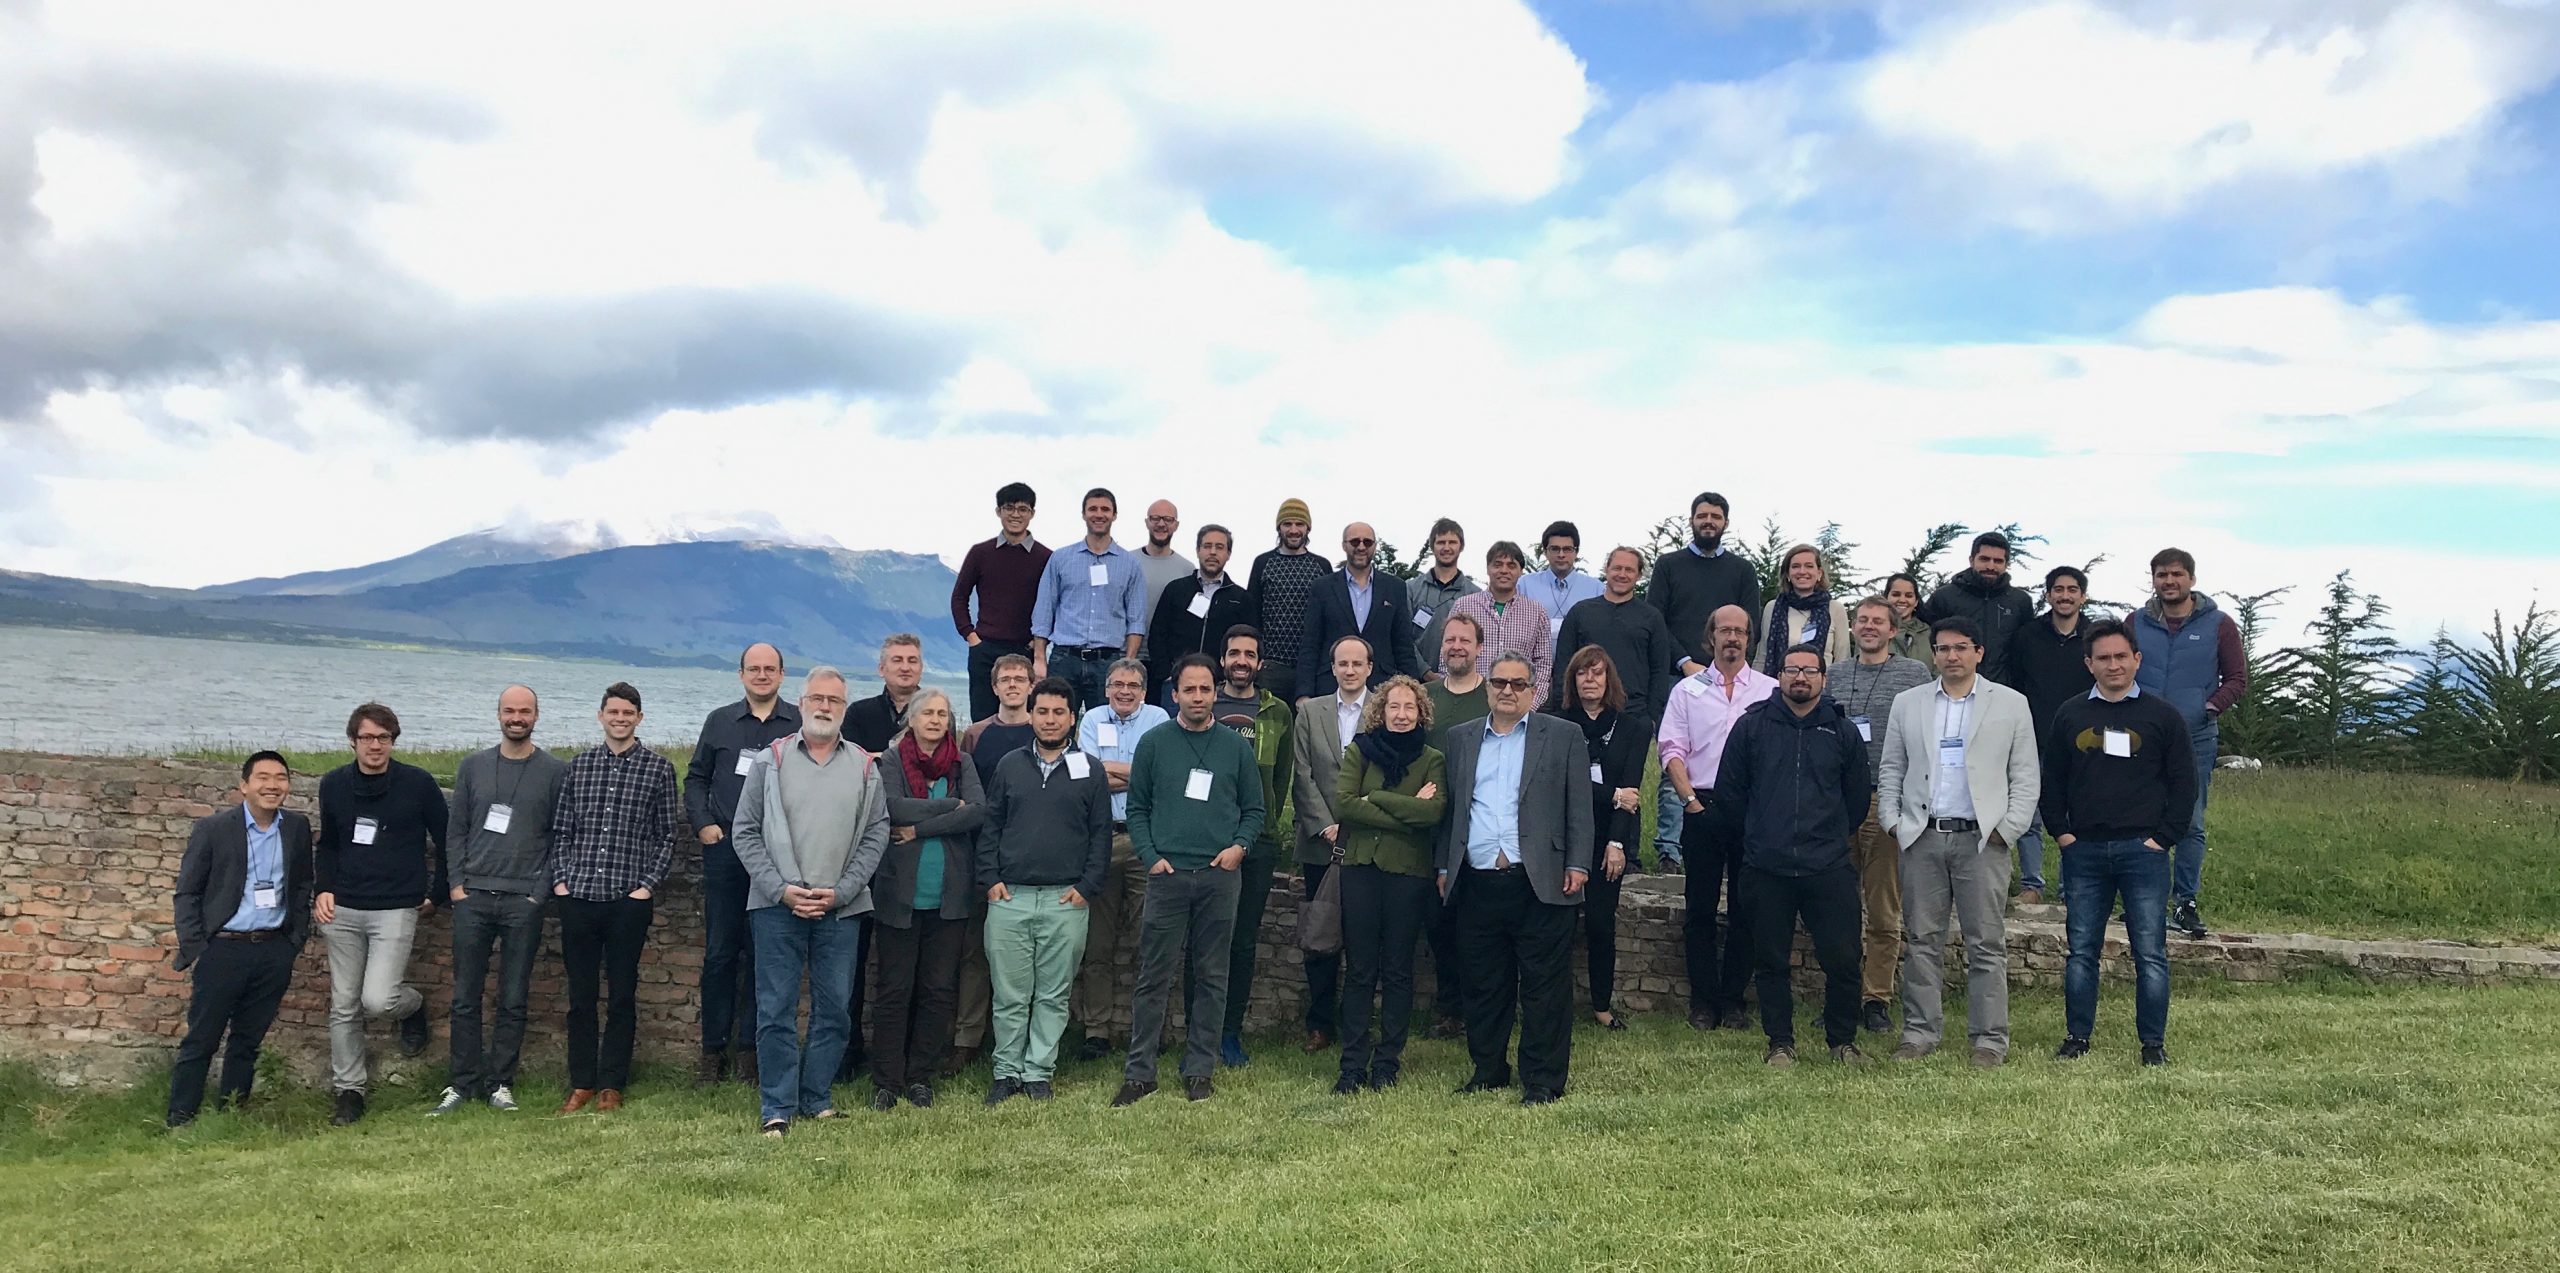 Workshop en Tecnología Cuántica Molecular reunirá a expertos mundiales en Puerto Natales